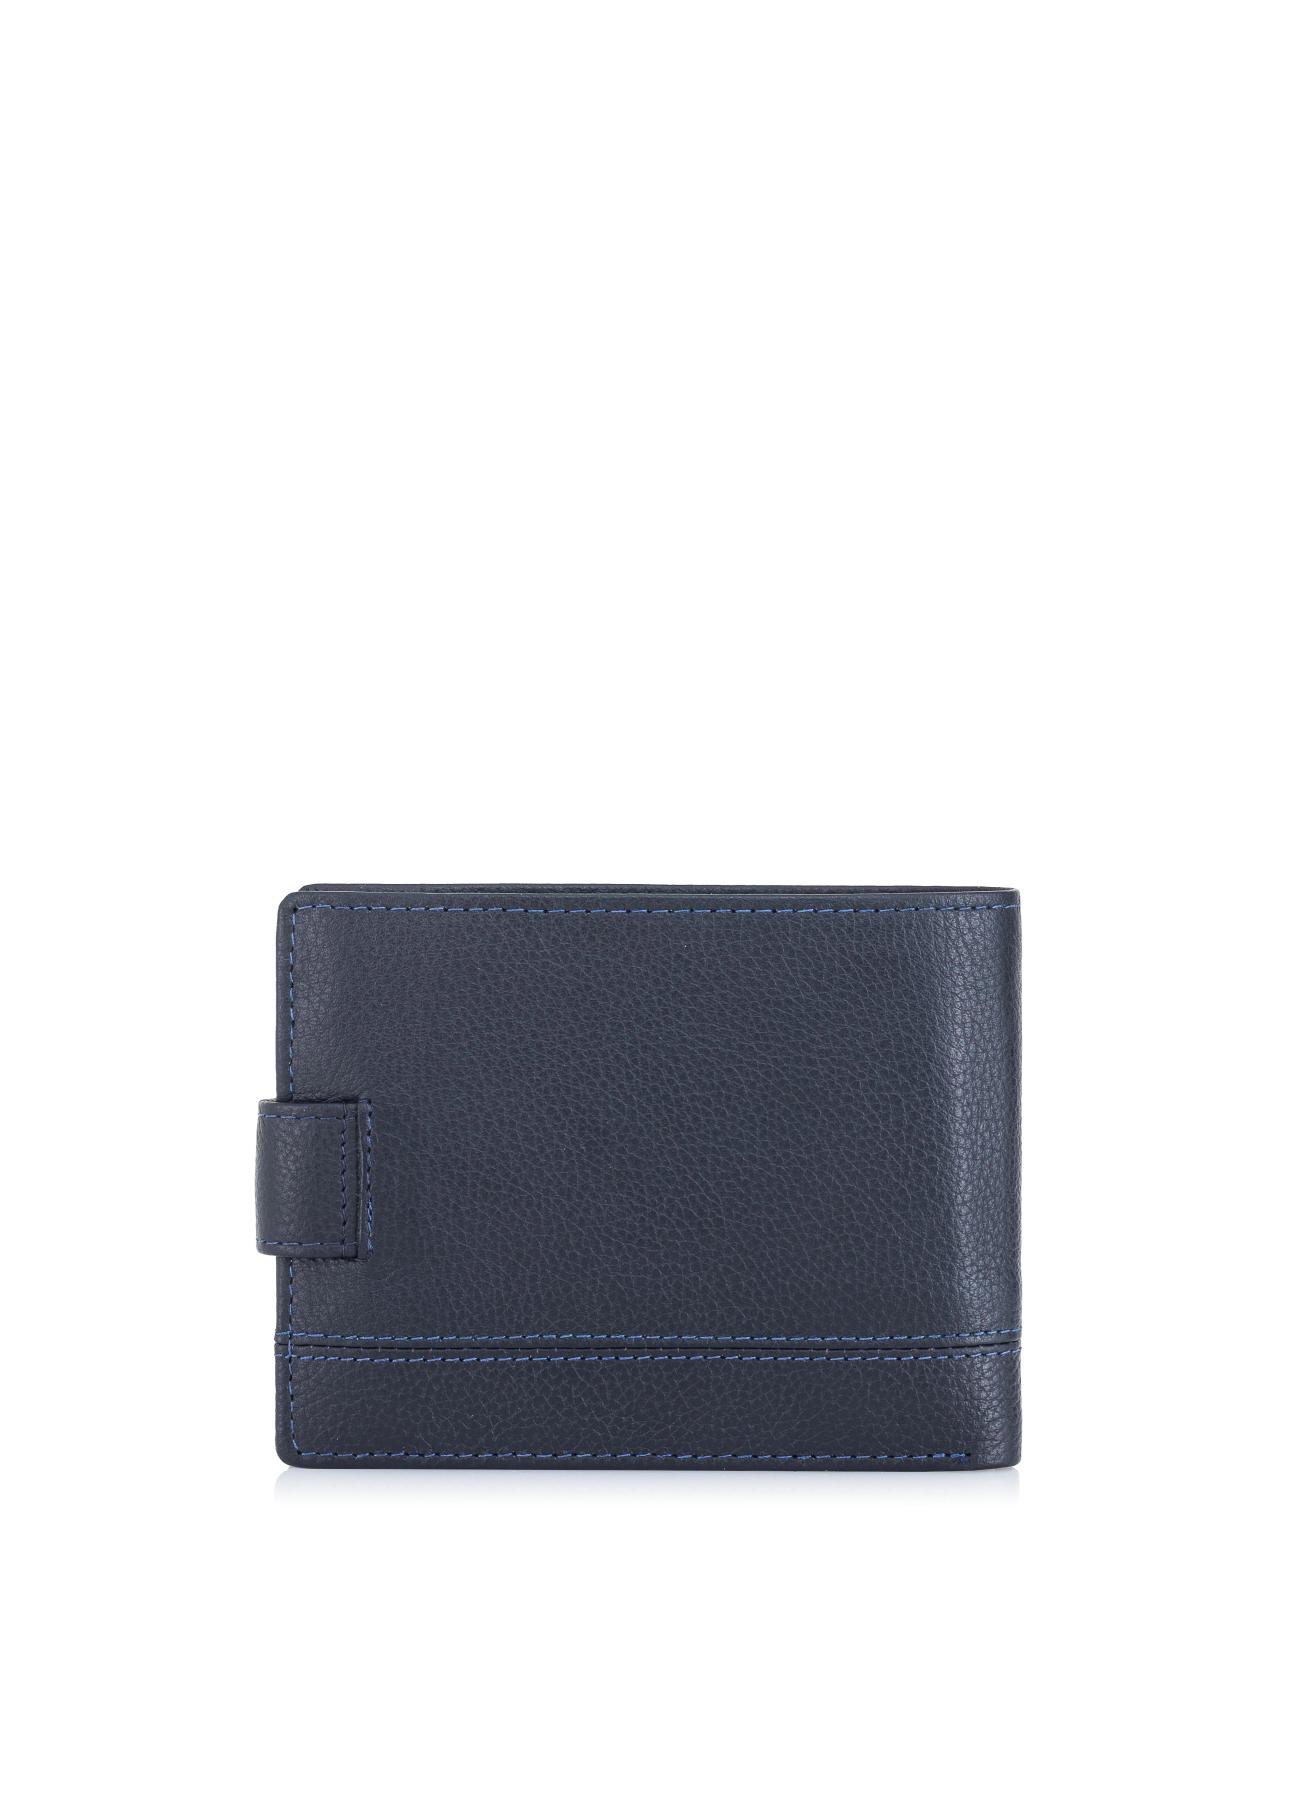 Granatowy skórzany portfel męski PORMS-0011-69(W24)